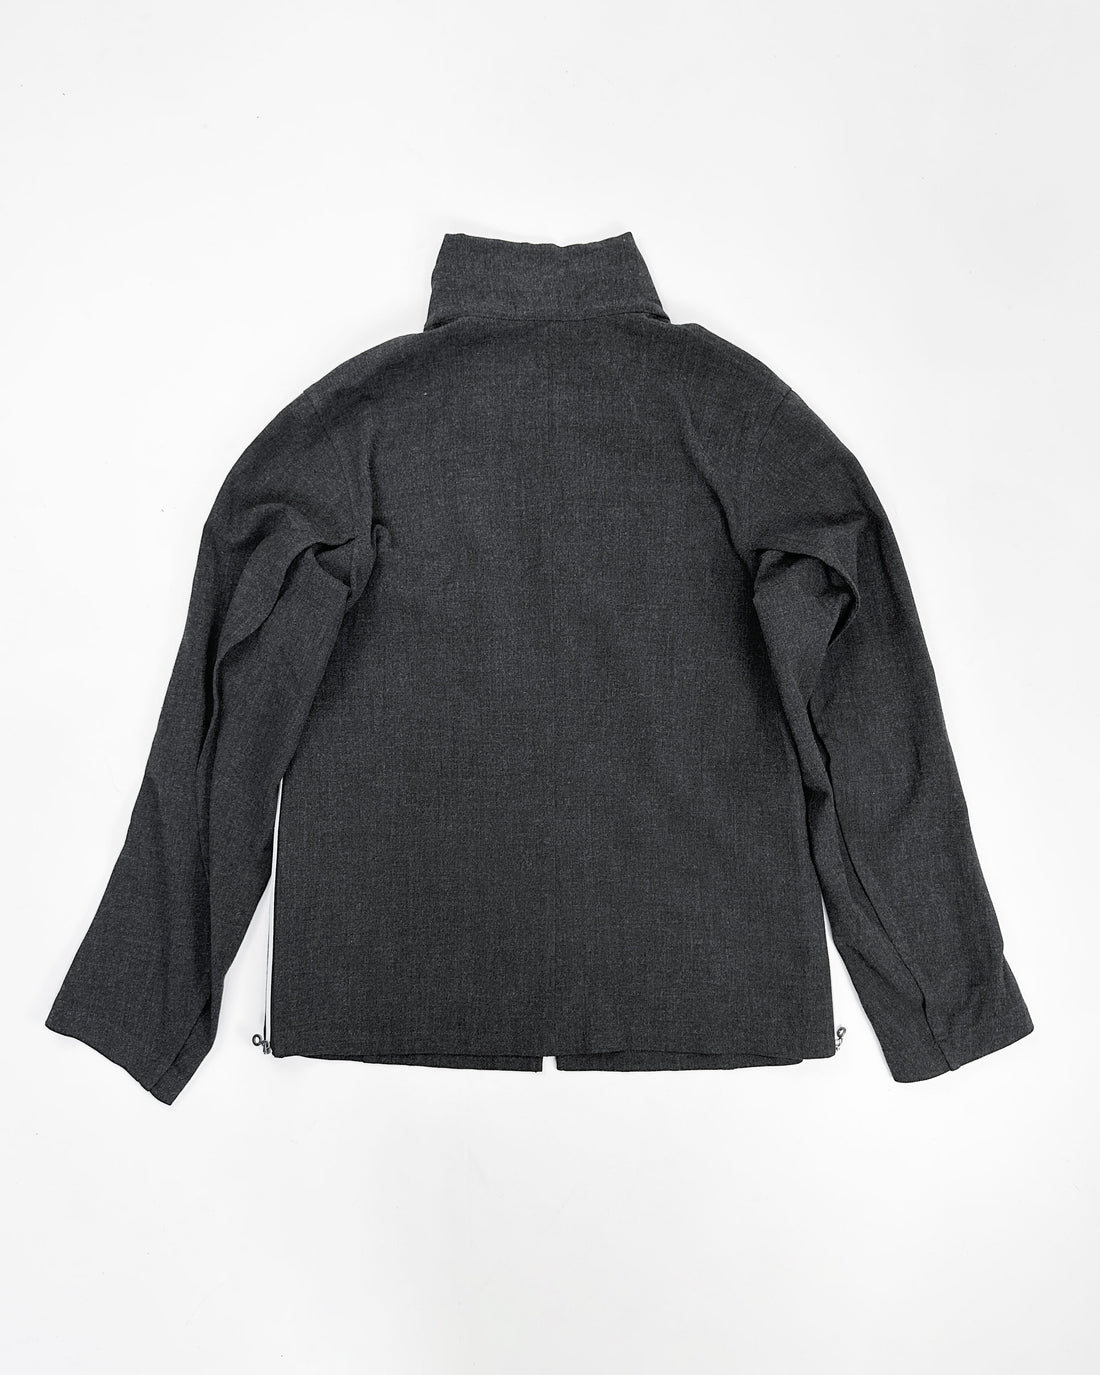 Marithé Francois Girbaud Wolf Grey Straight Jacket 2000's